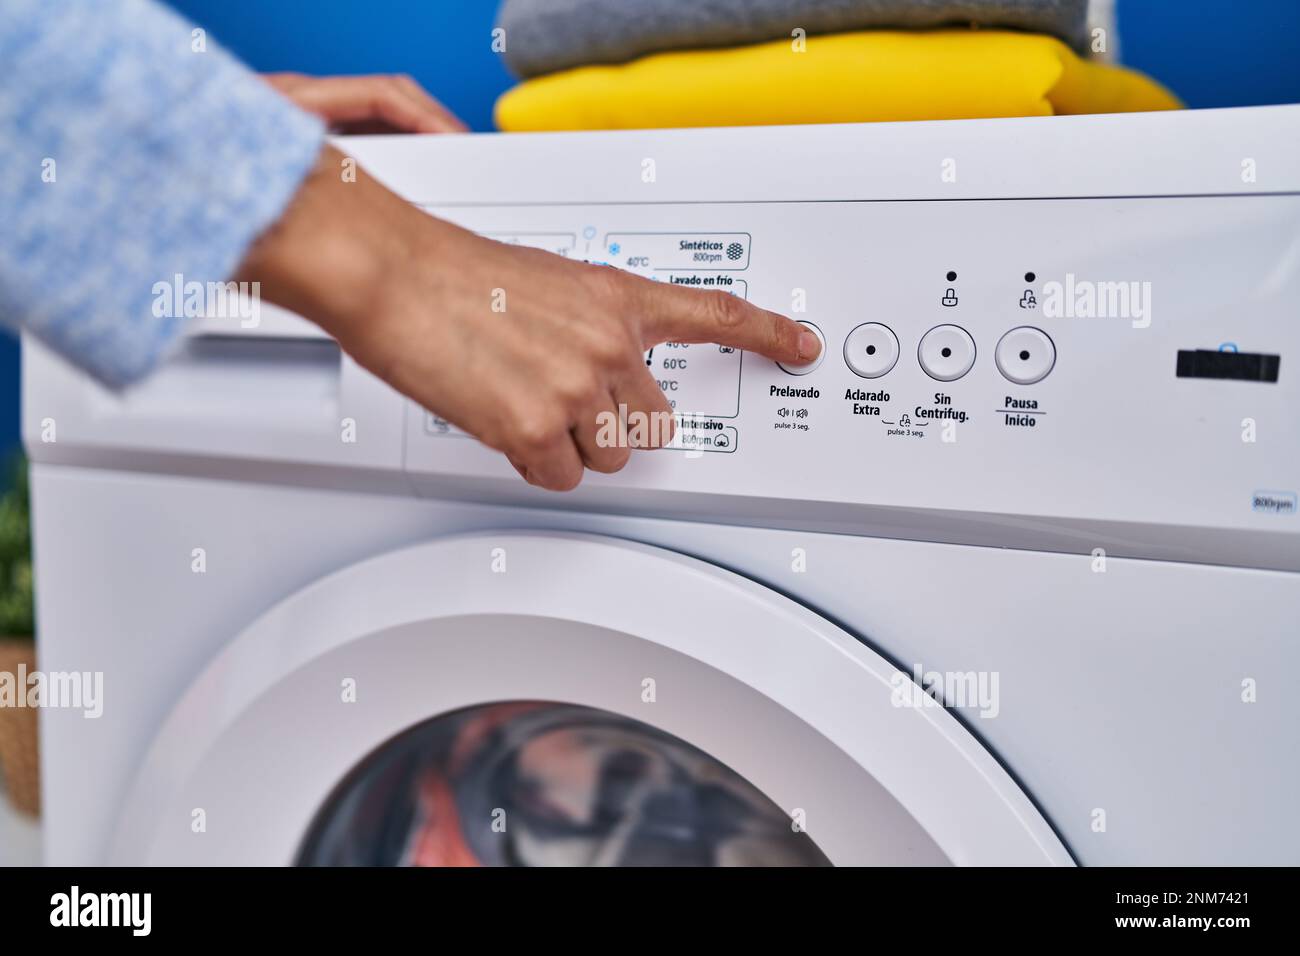 Junge Frau, die die Waschmaschine in der Waschküche anmacht Stockfotografie  - Alamy